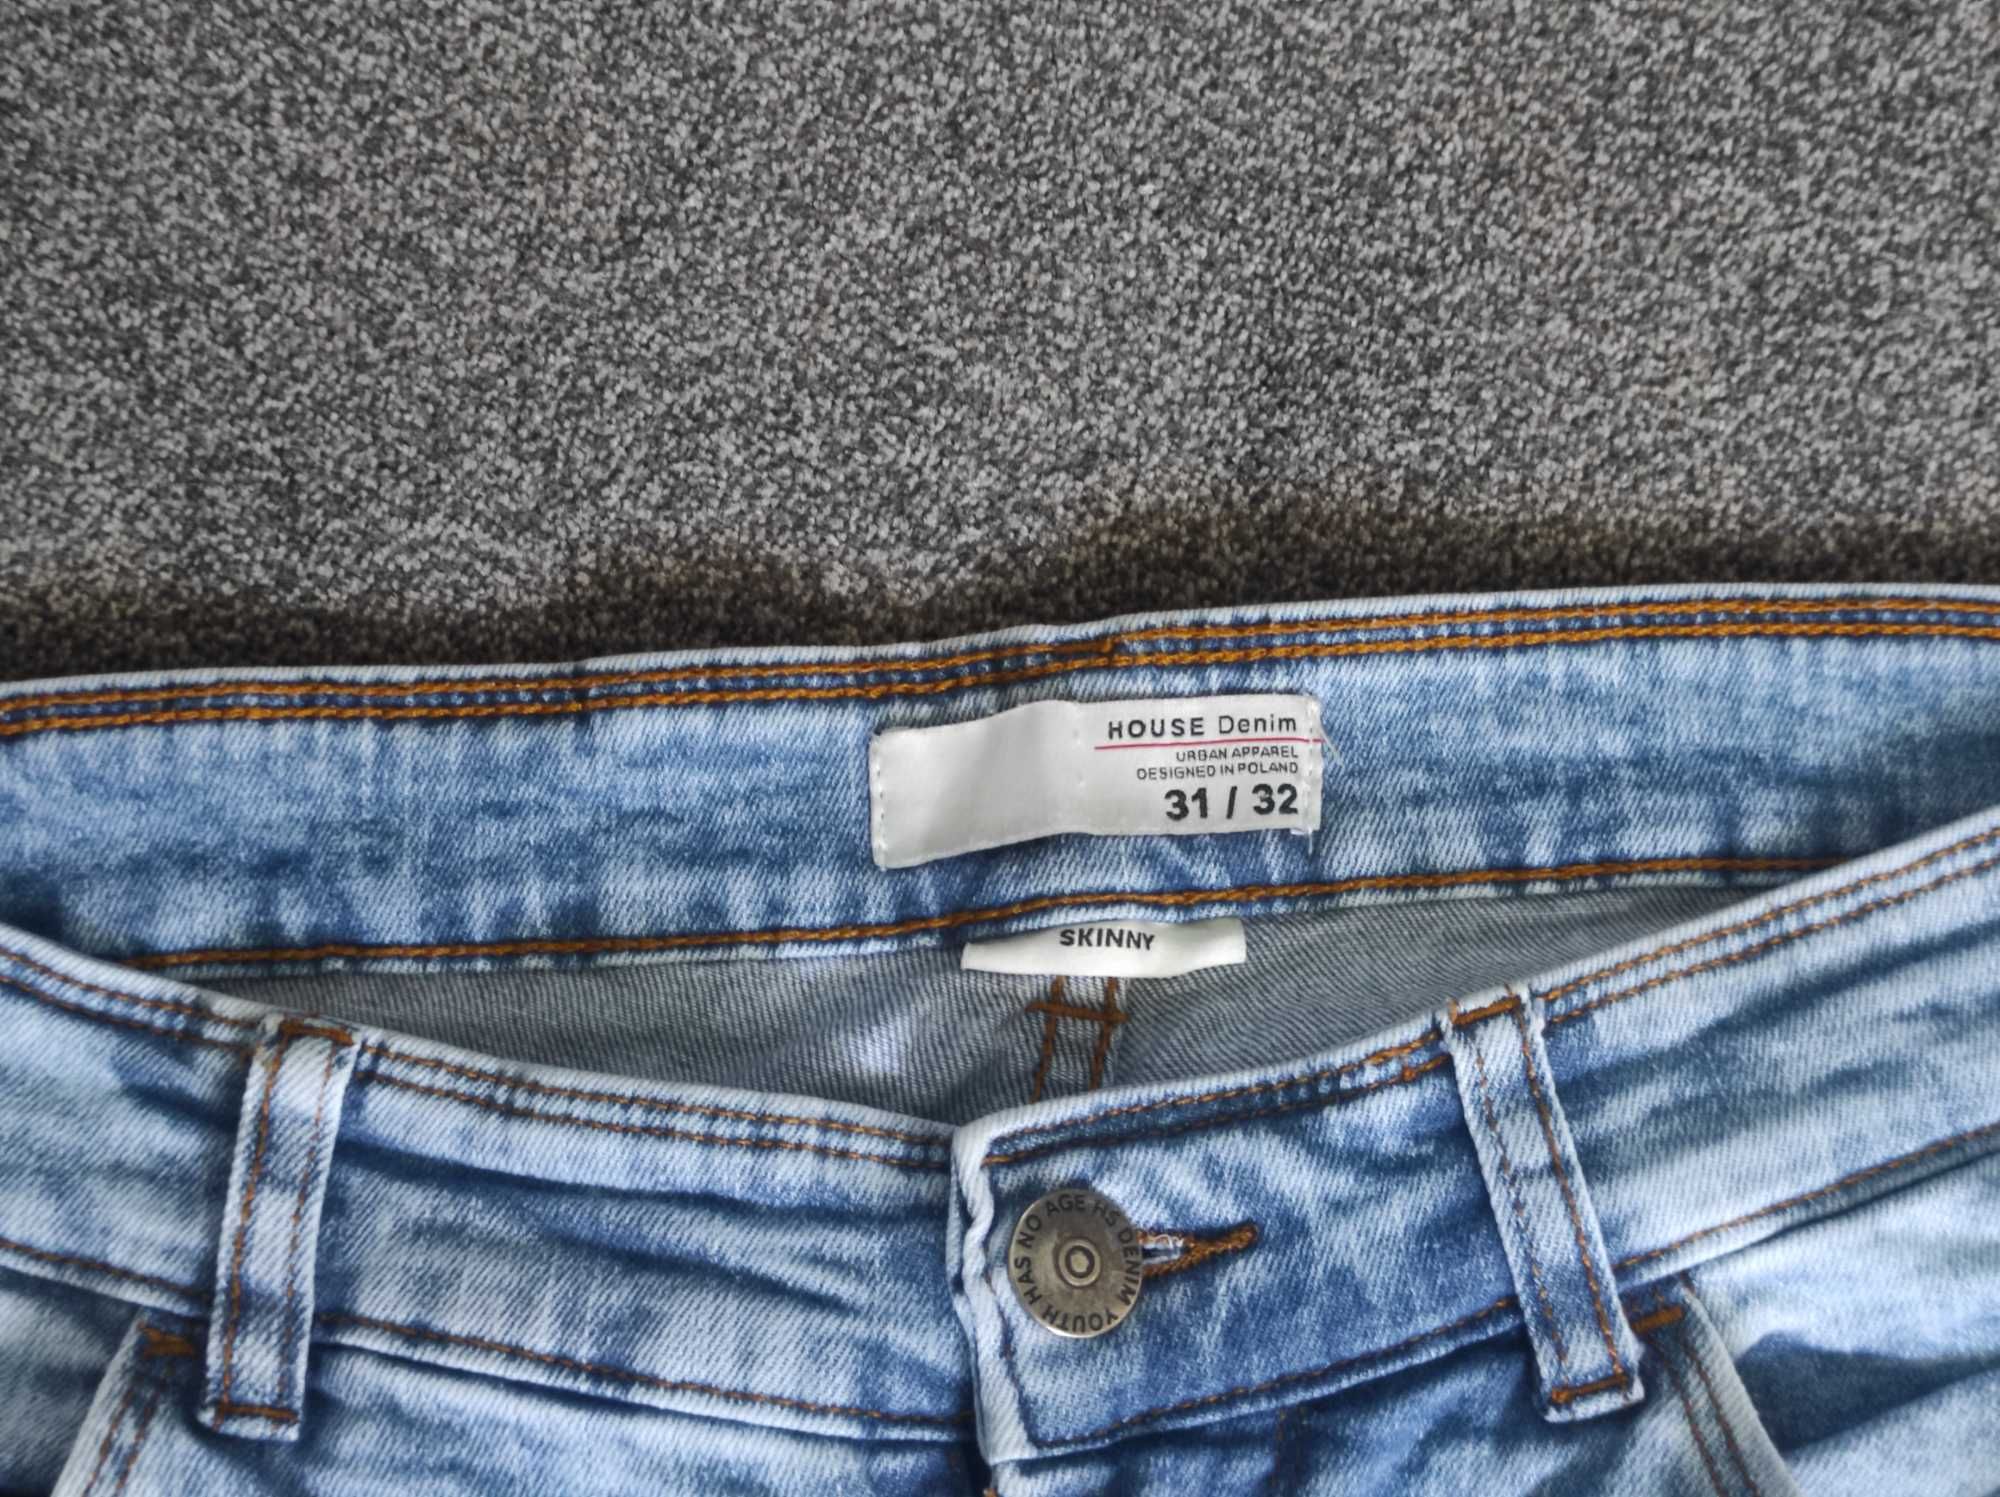 Spodnie męskie skiny jasny jeans House rozm 31/32